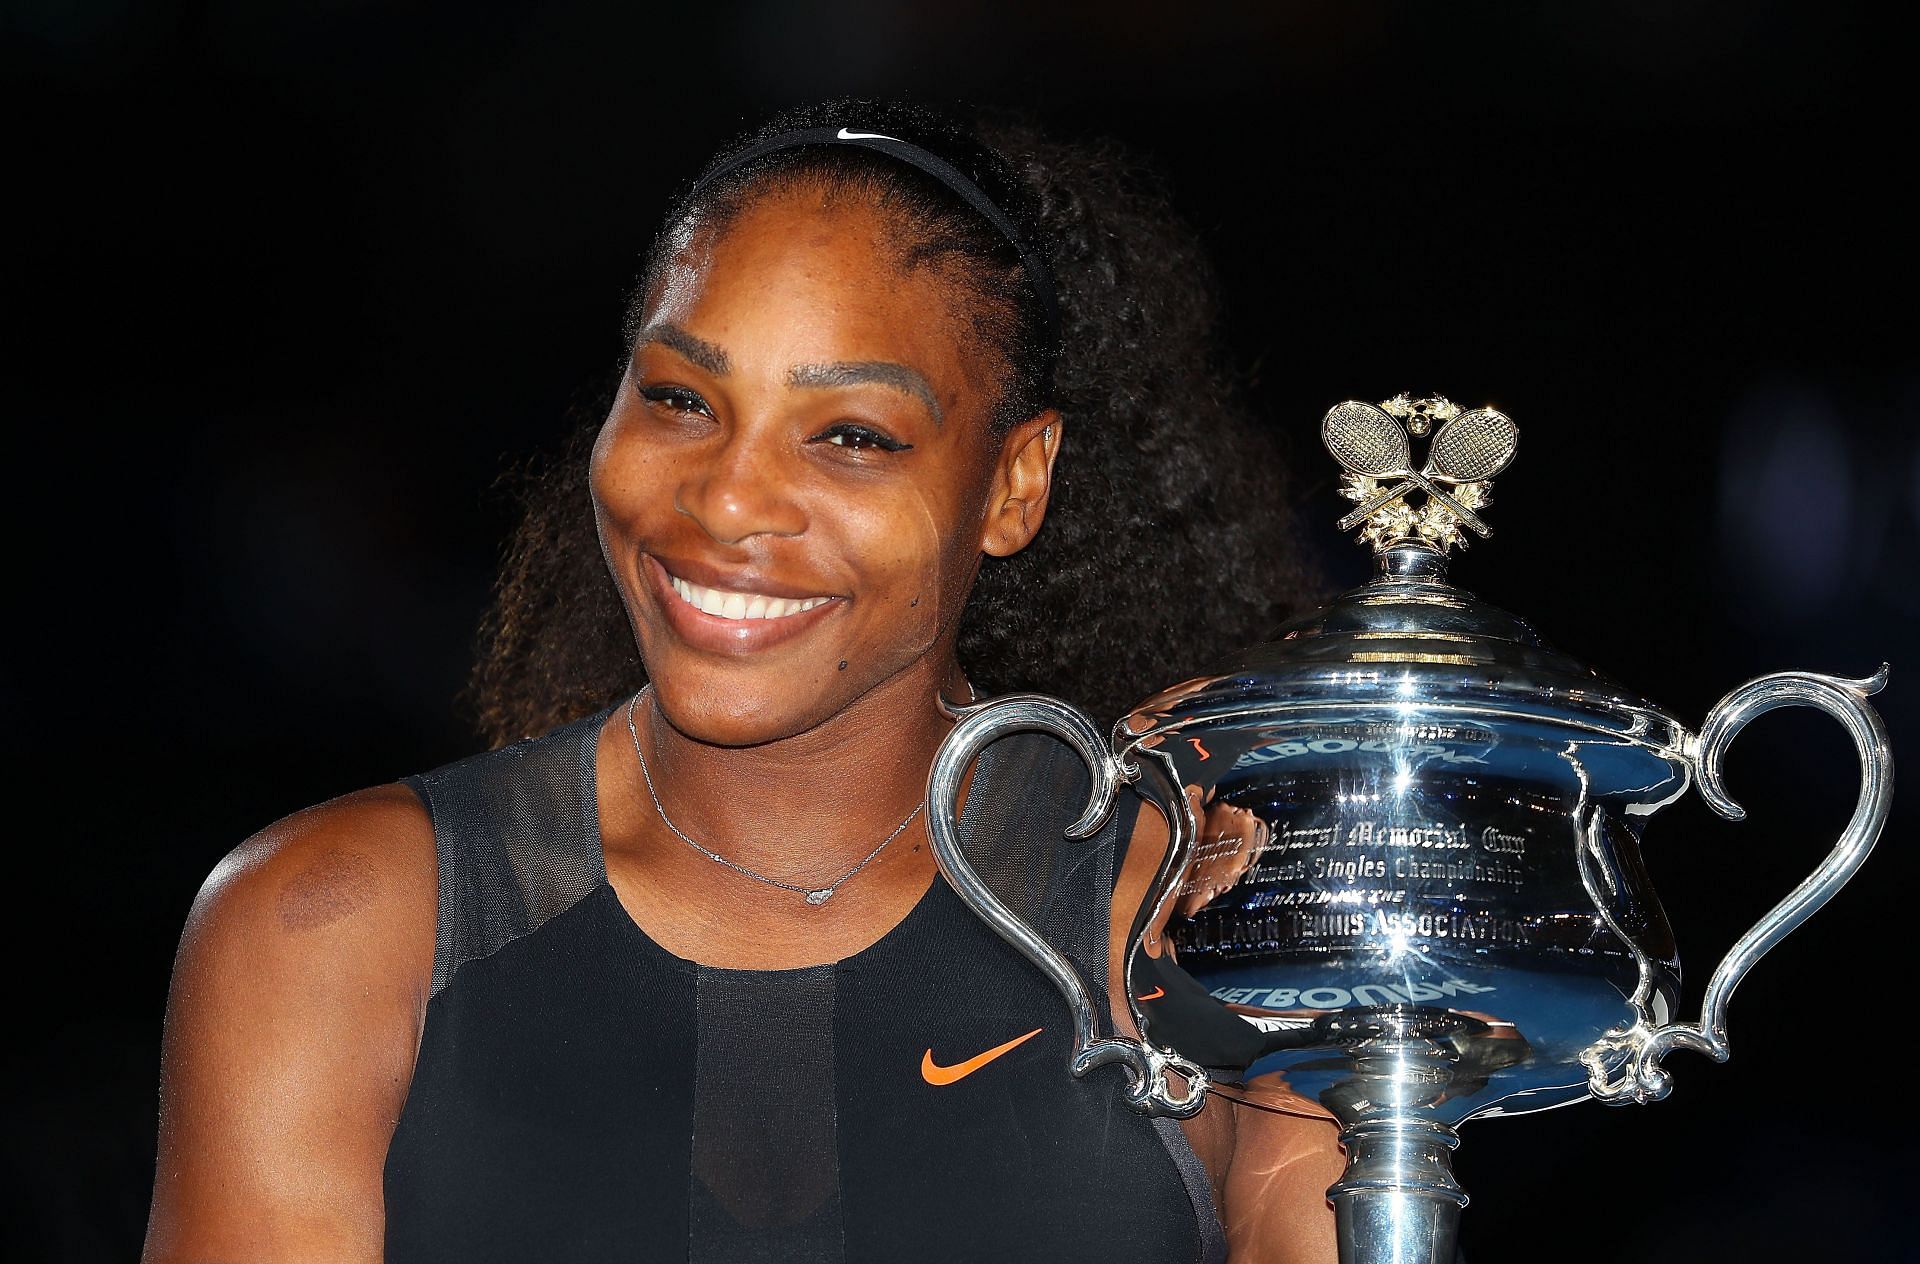 Serena Williams won the 2017 Australian Open